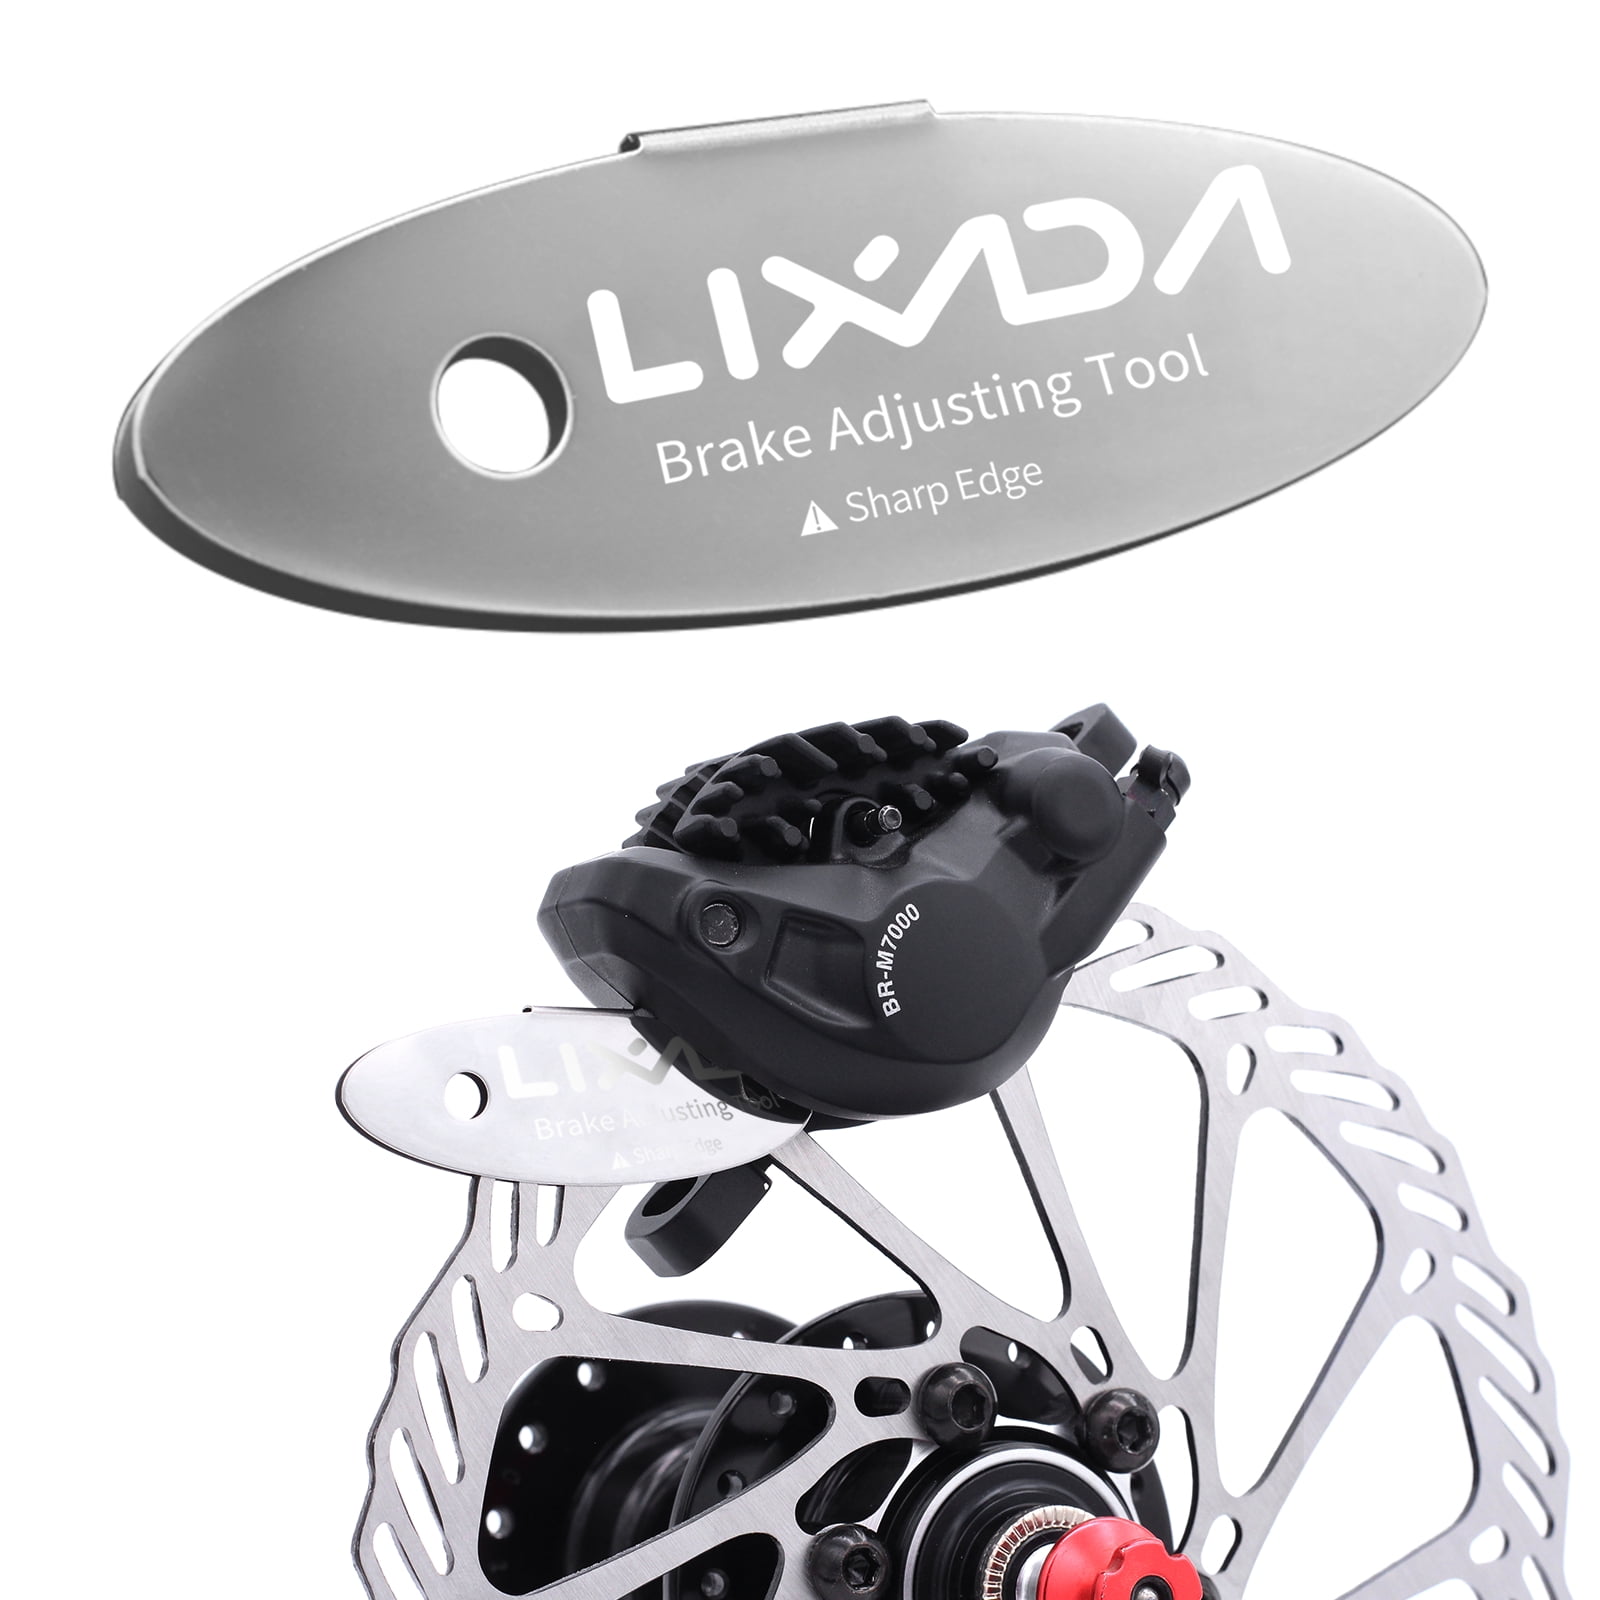 Lixada MTB Disc Brake Pads Adjusting Tool Bicycle Pads Mounting Assistant Brake Pads Rotor Alignment Tools Spacer Bike Repair Kit